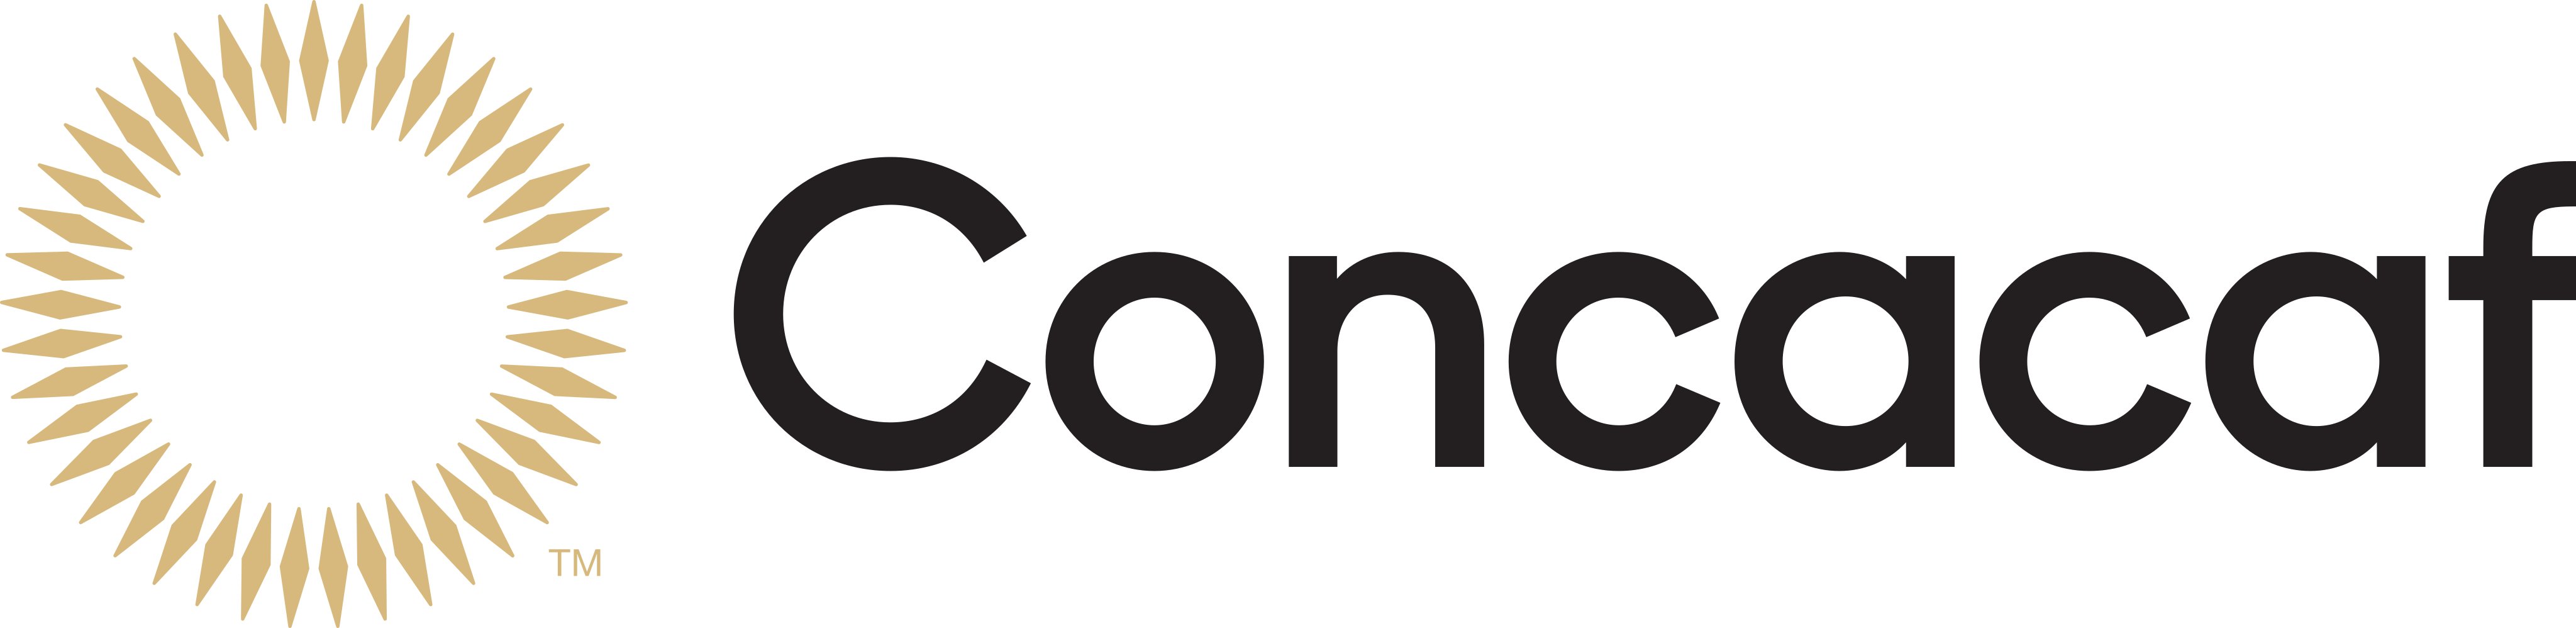 concacaf logo - CONCACAF Logo